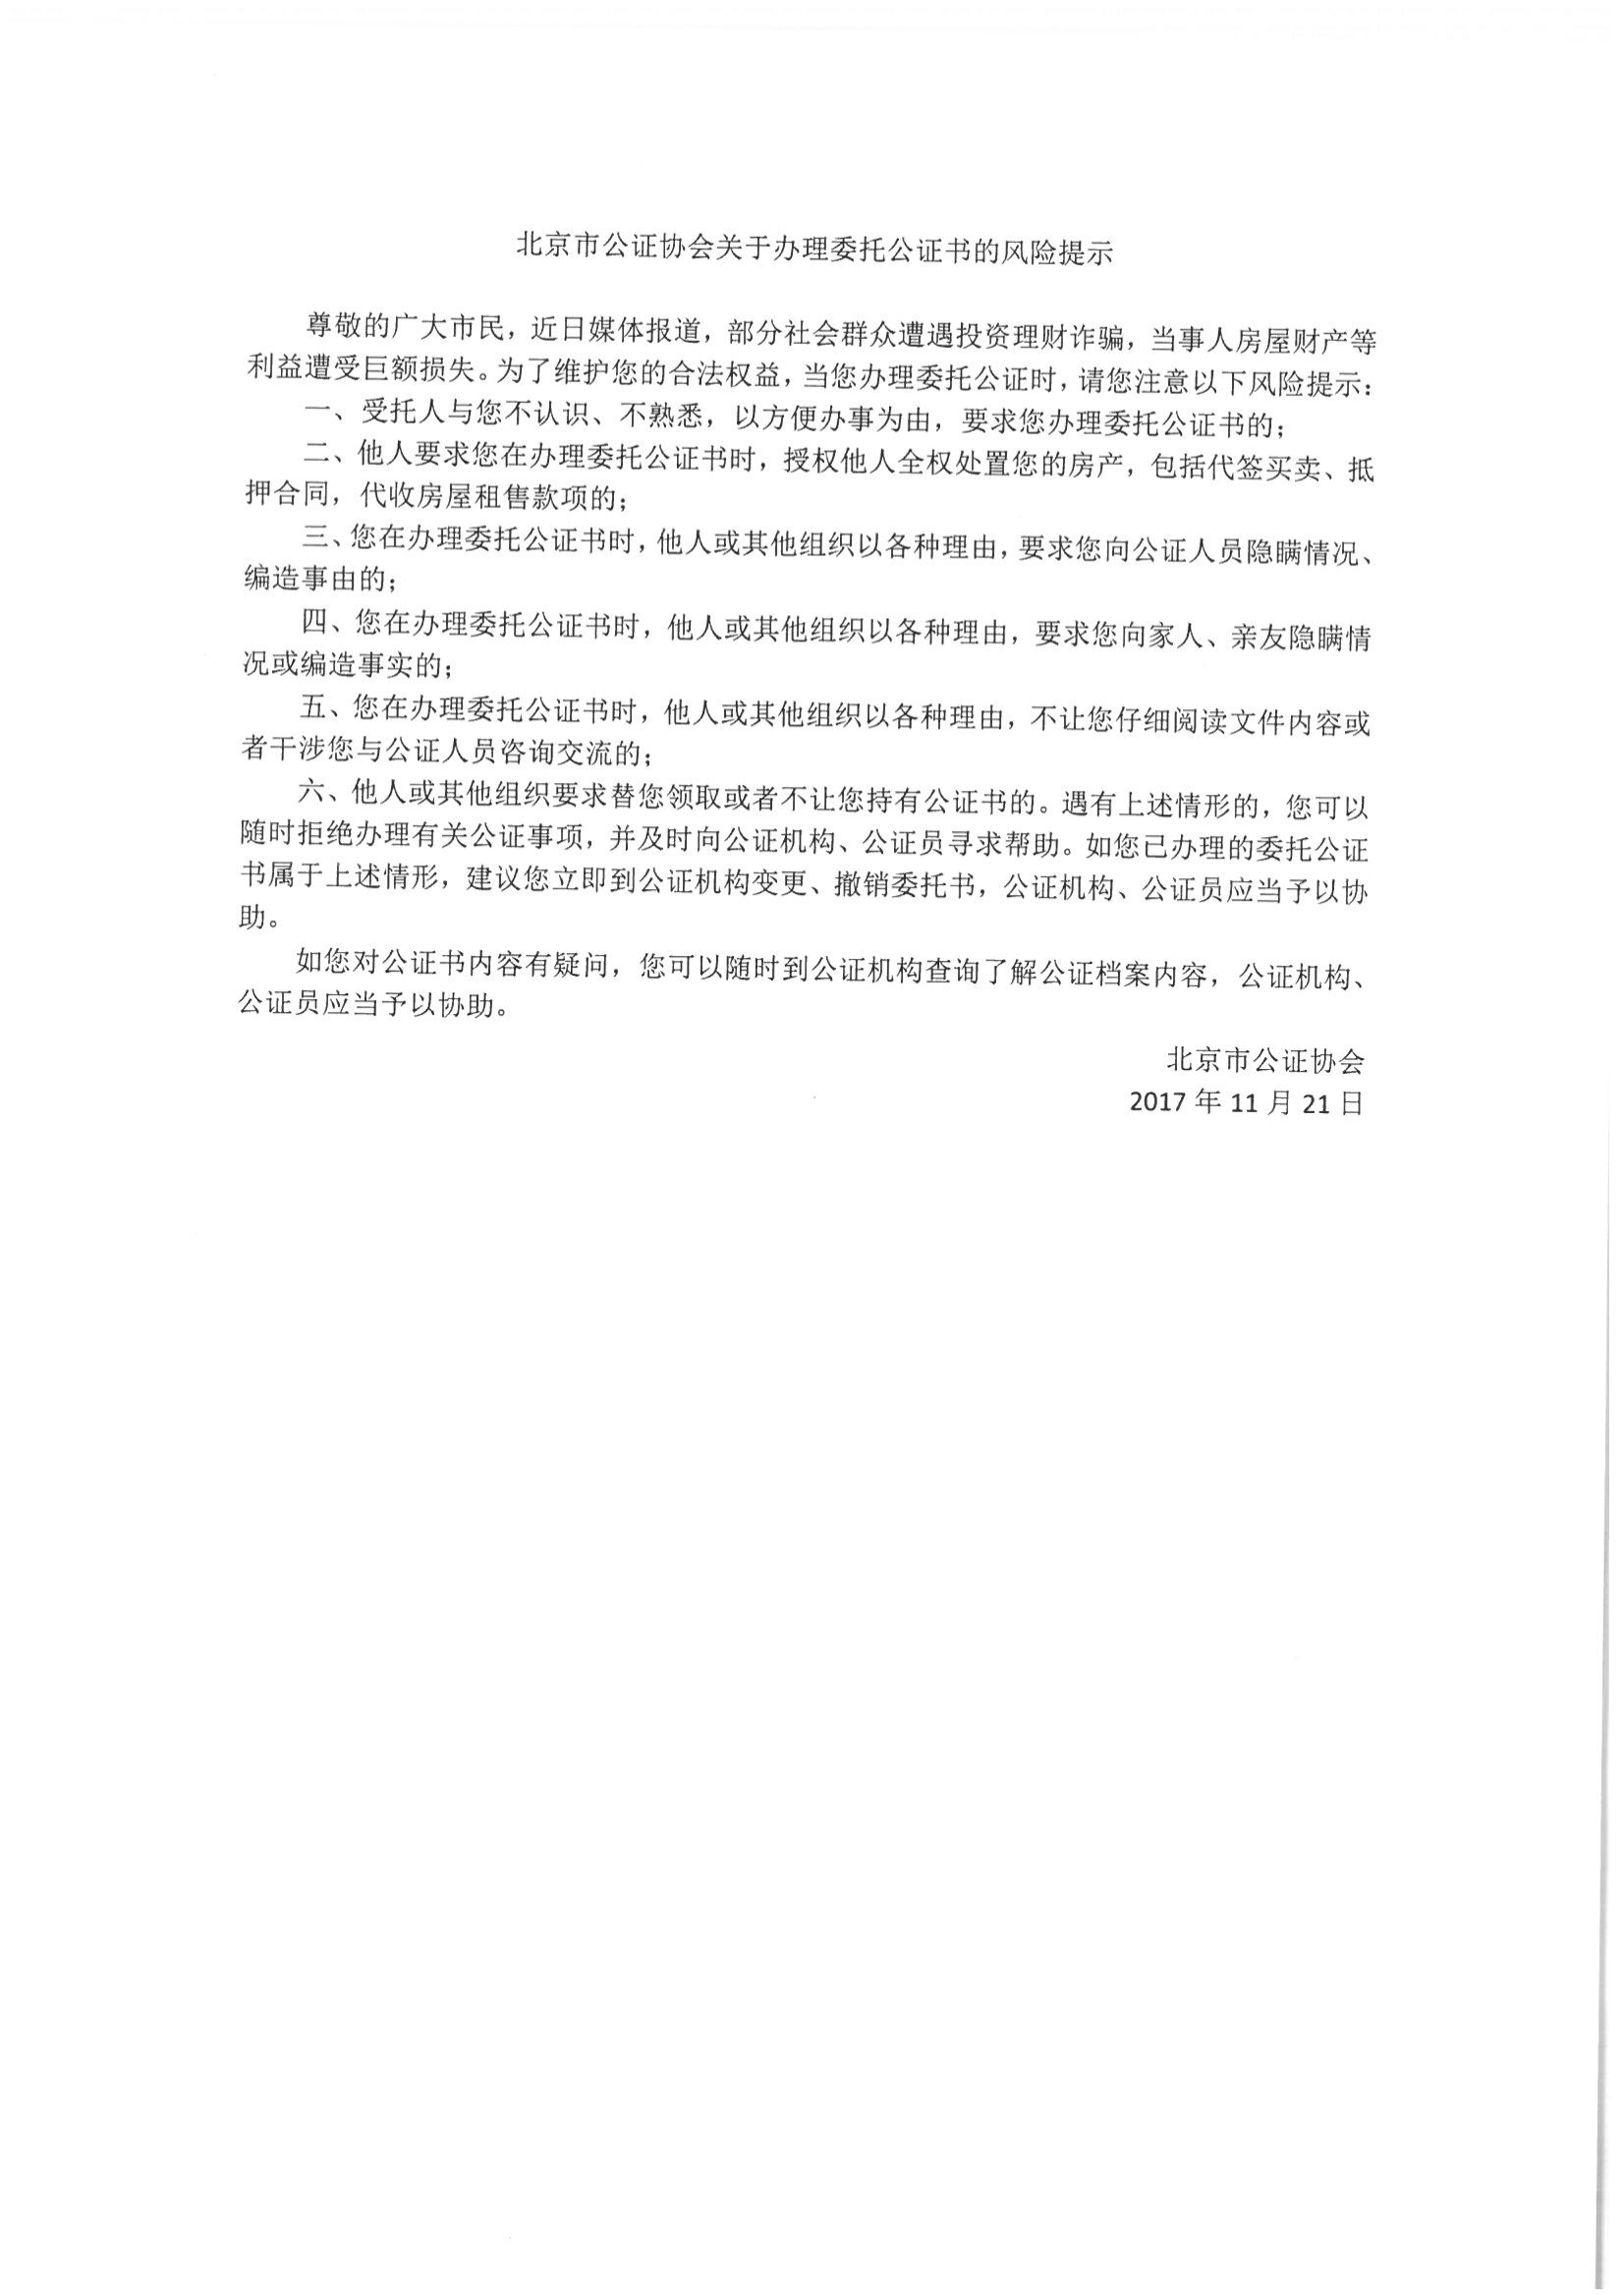 2、北京市公证协会关于办理委托公证书的风险提示_00